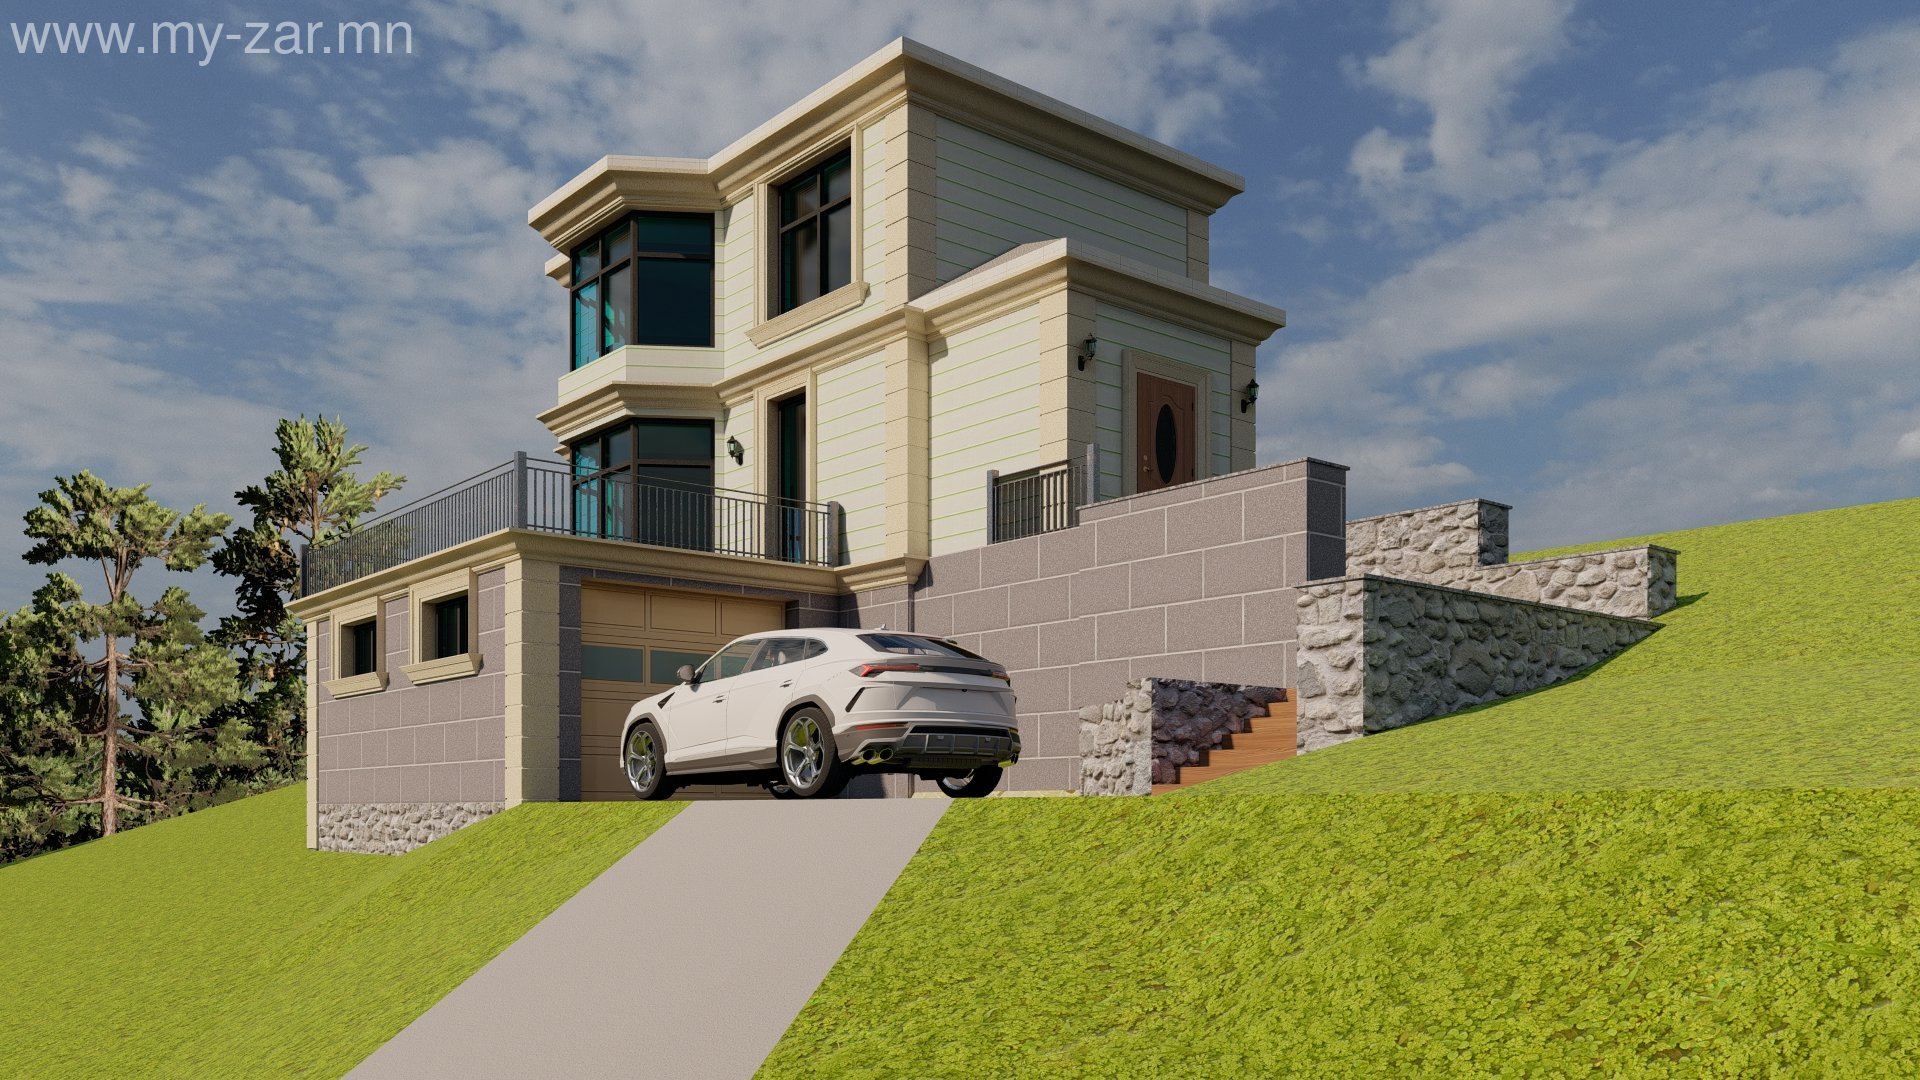 Бүх төрлийн 3D interior, exterior, landscape model түргэн маш ойлгомжтой зааж сургана